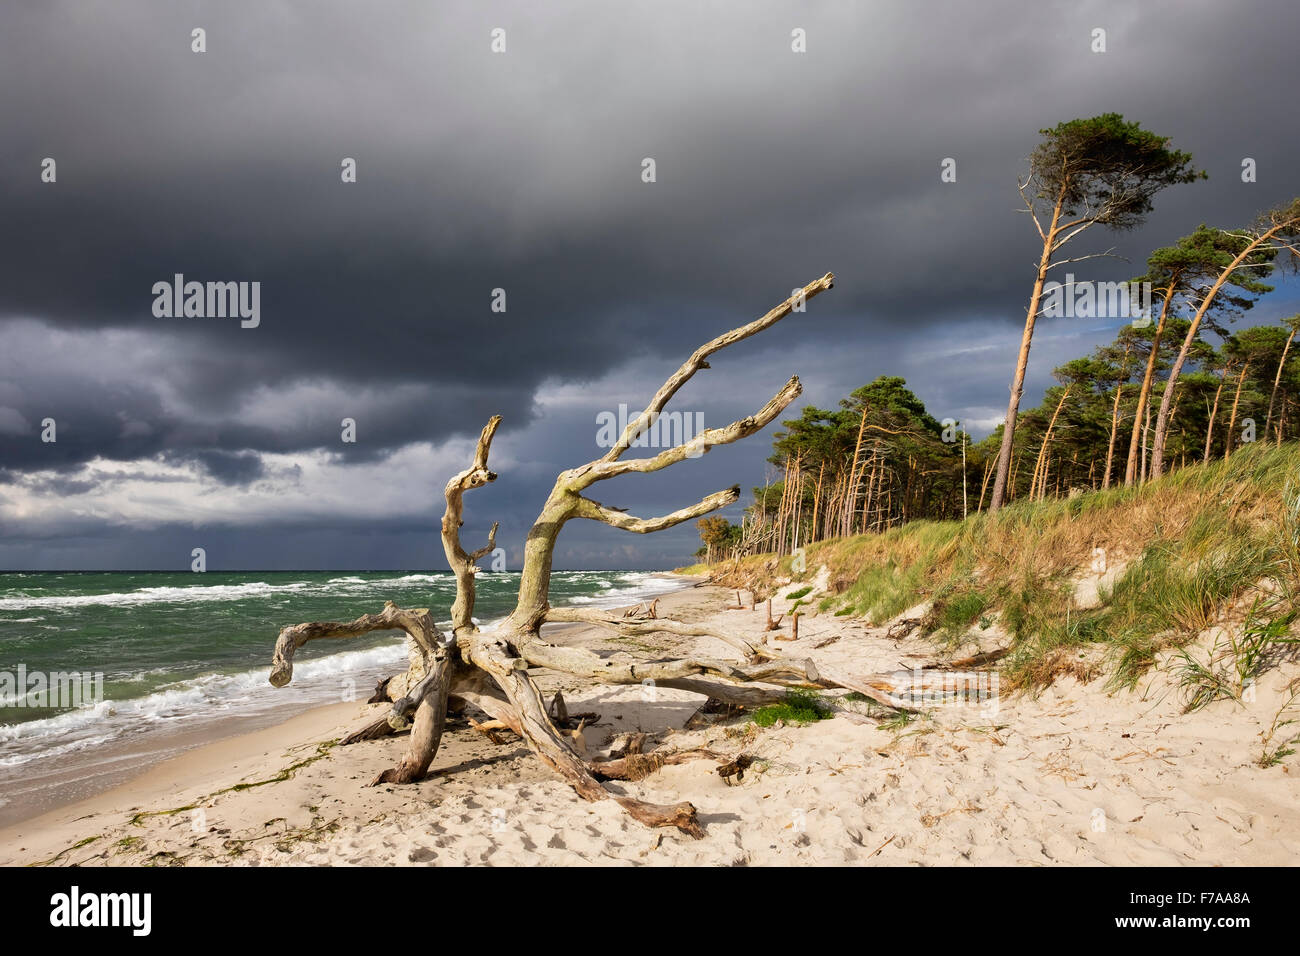 Arbre mort sur la plage de l'ouest sur la mer Baltique, des nuages sombres, né am Darß, Fischland-darss-Zingst, Poméranie occidentale Lagoon Area Banque D'Images